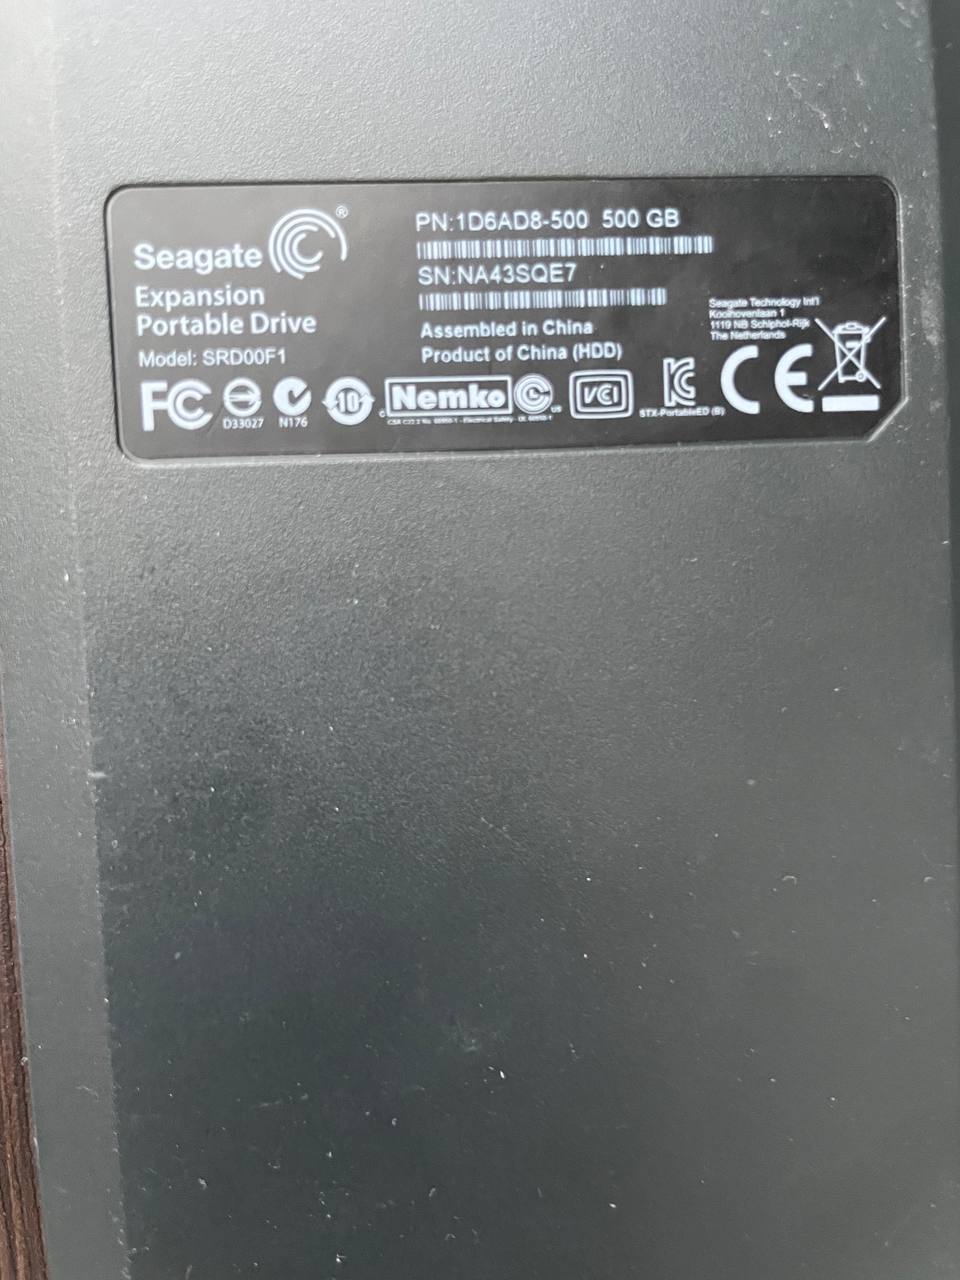 Добрый день, возможно ли восстановление данных такого жесткого диска? Seagate
Expansion
Portable Drive